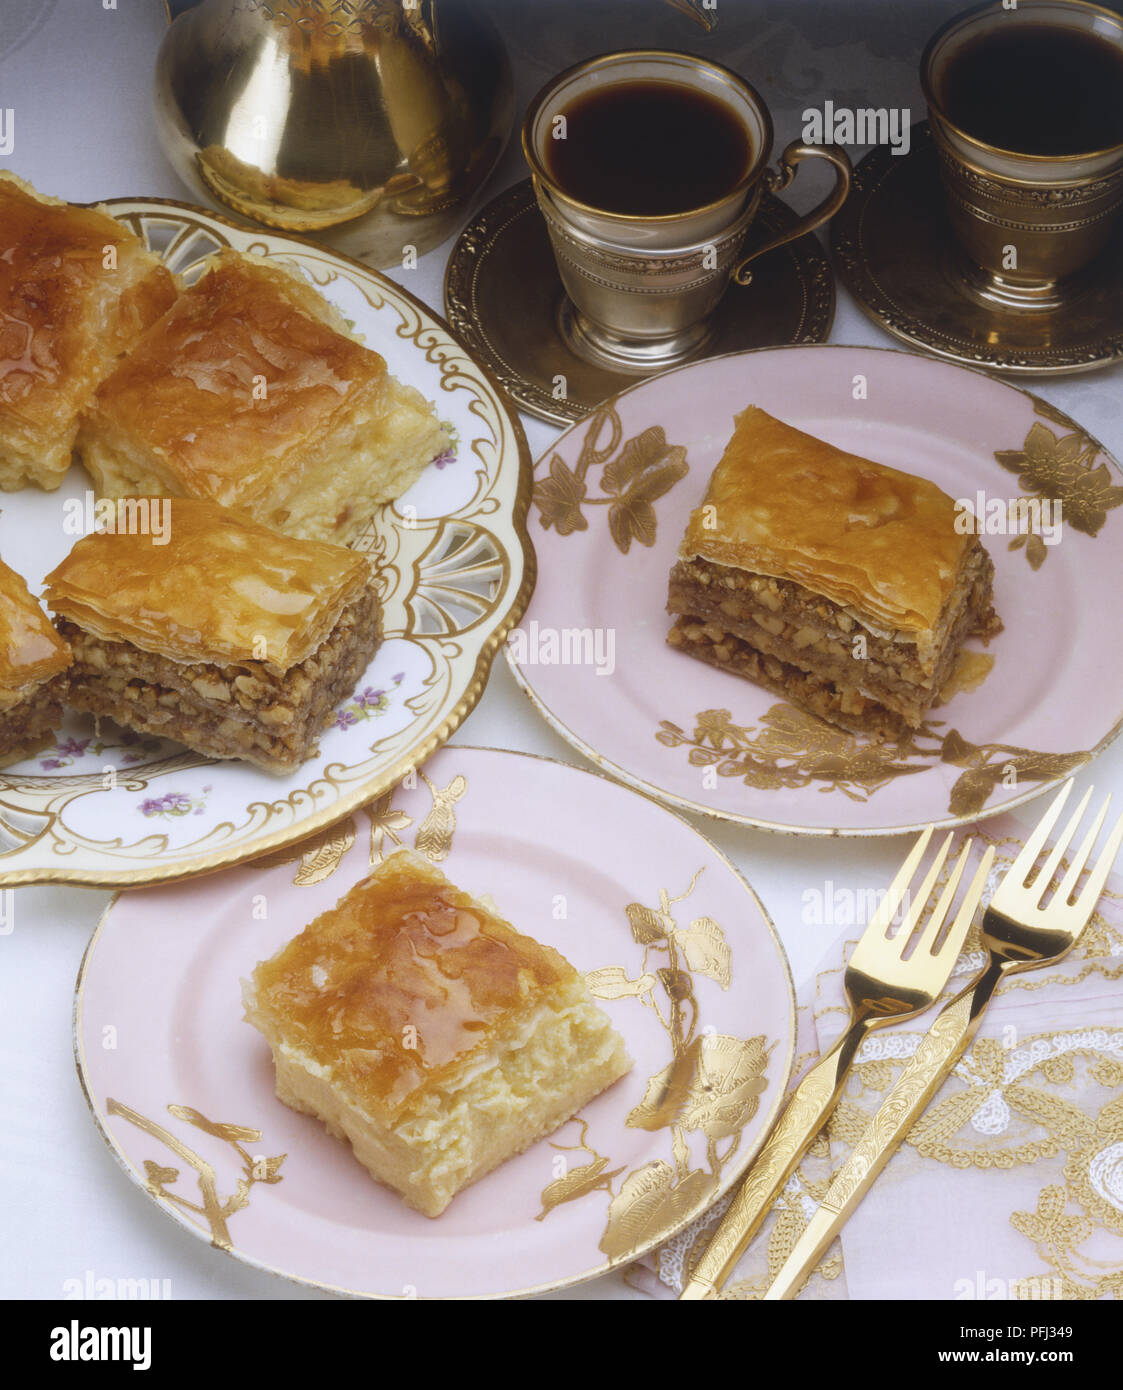 Pezzi di più livelli di torta di mele servita su piatti, caffè servito in bicchieri d'argento Foto Stock